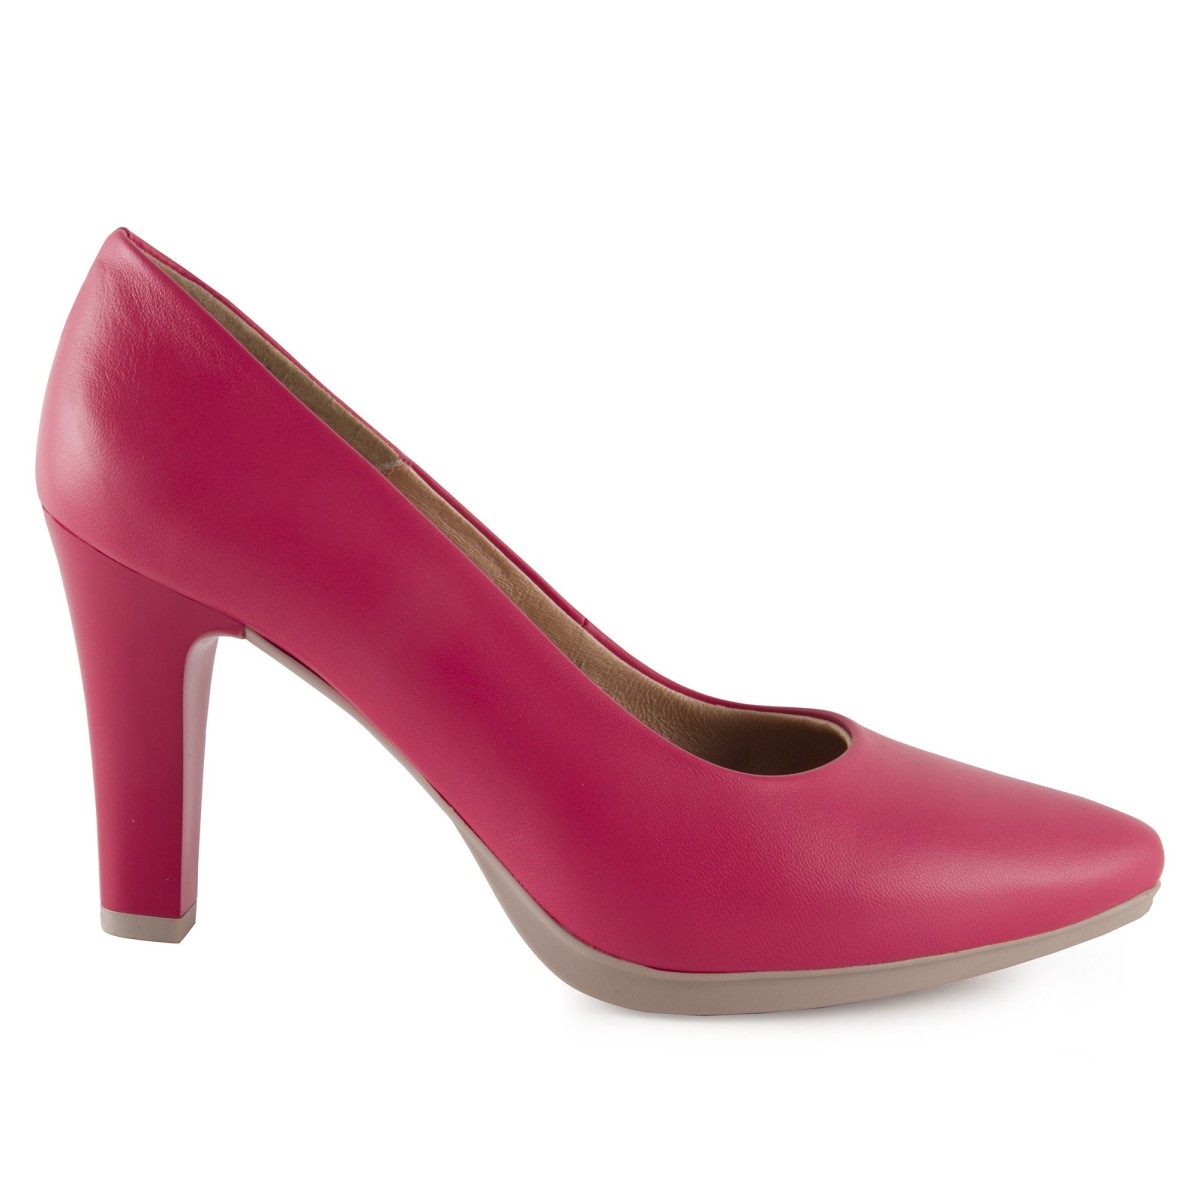 copy of Zapatos salones by Chamby Zapatos salones de mujer con tacón en piel color rojo y plantilla rellena de gel, fabricados e